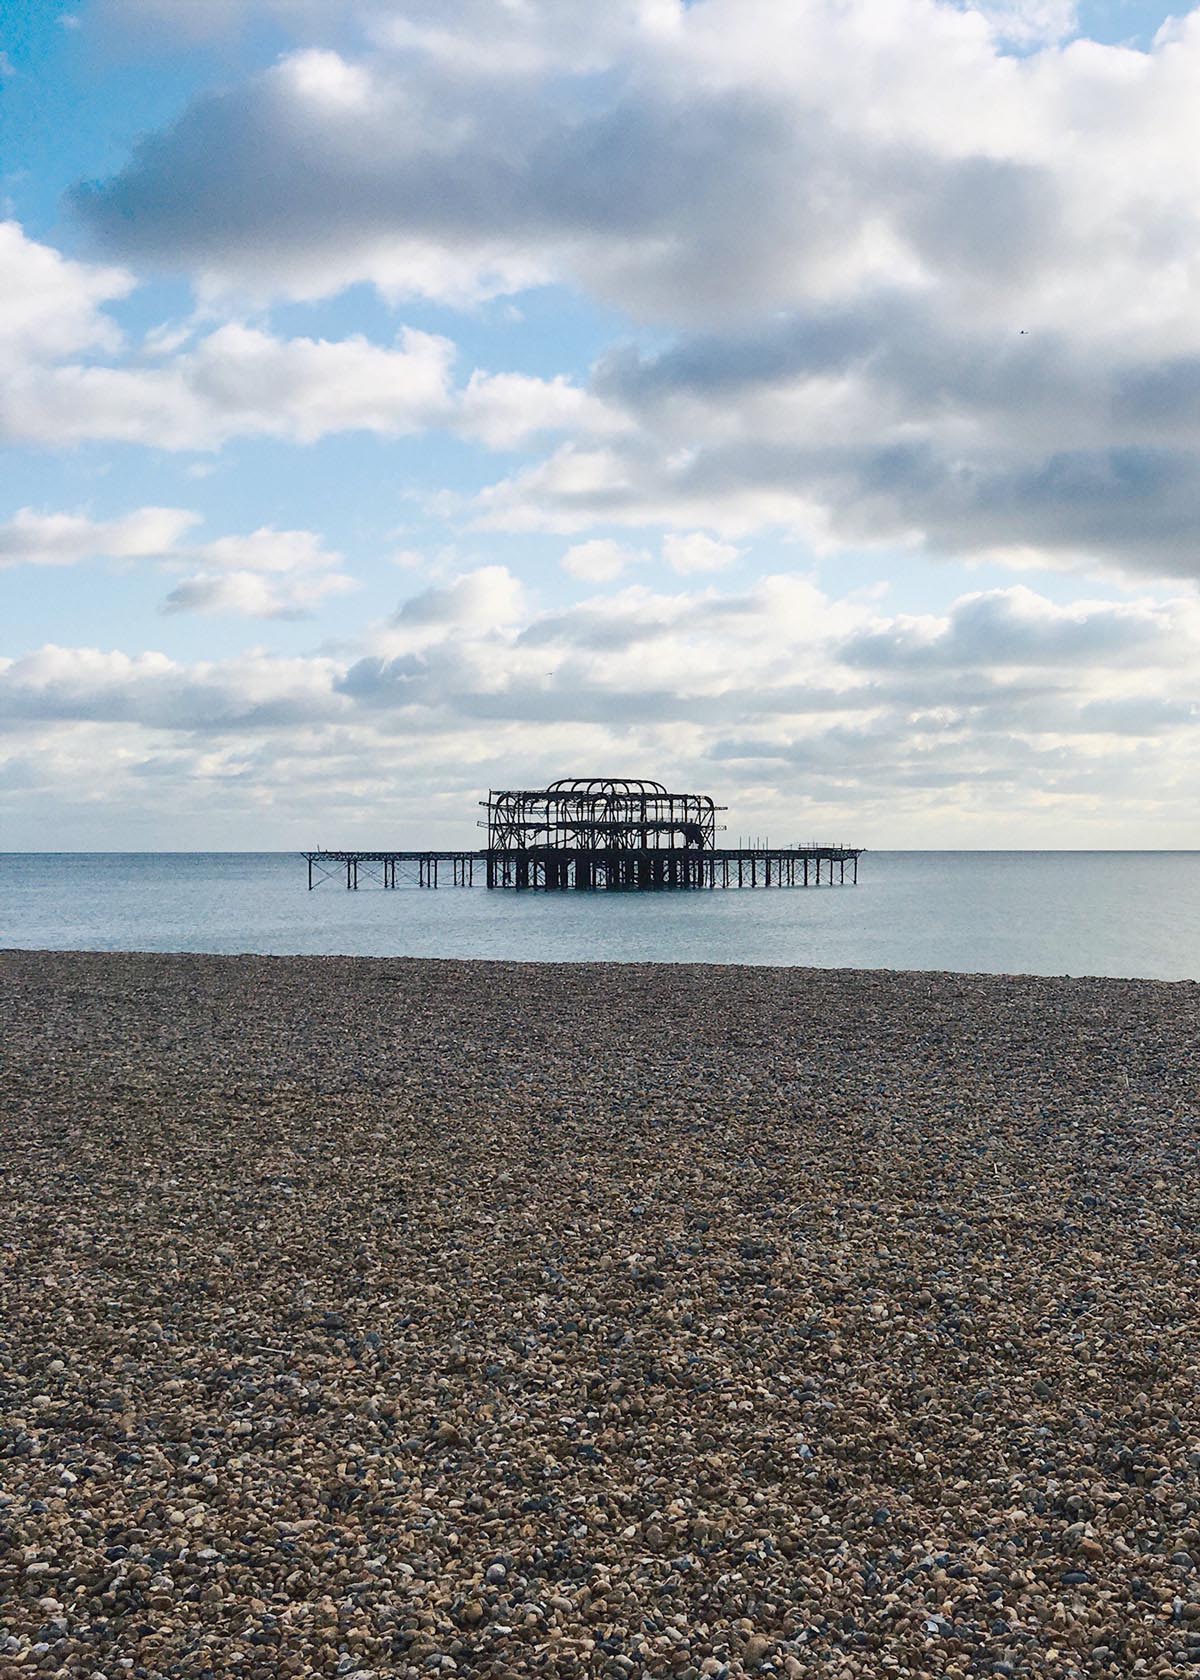 Brighton vecchio molo in una giornata parzialmente nuvolosa.